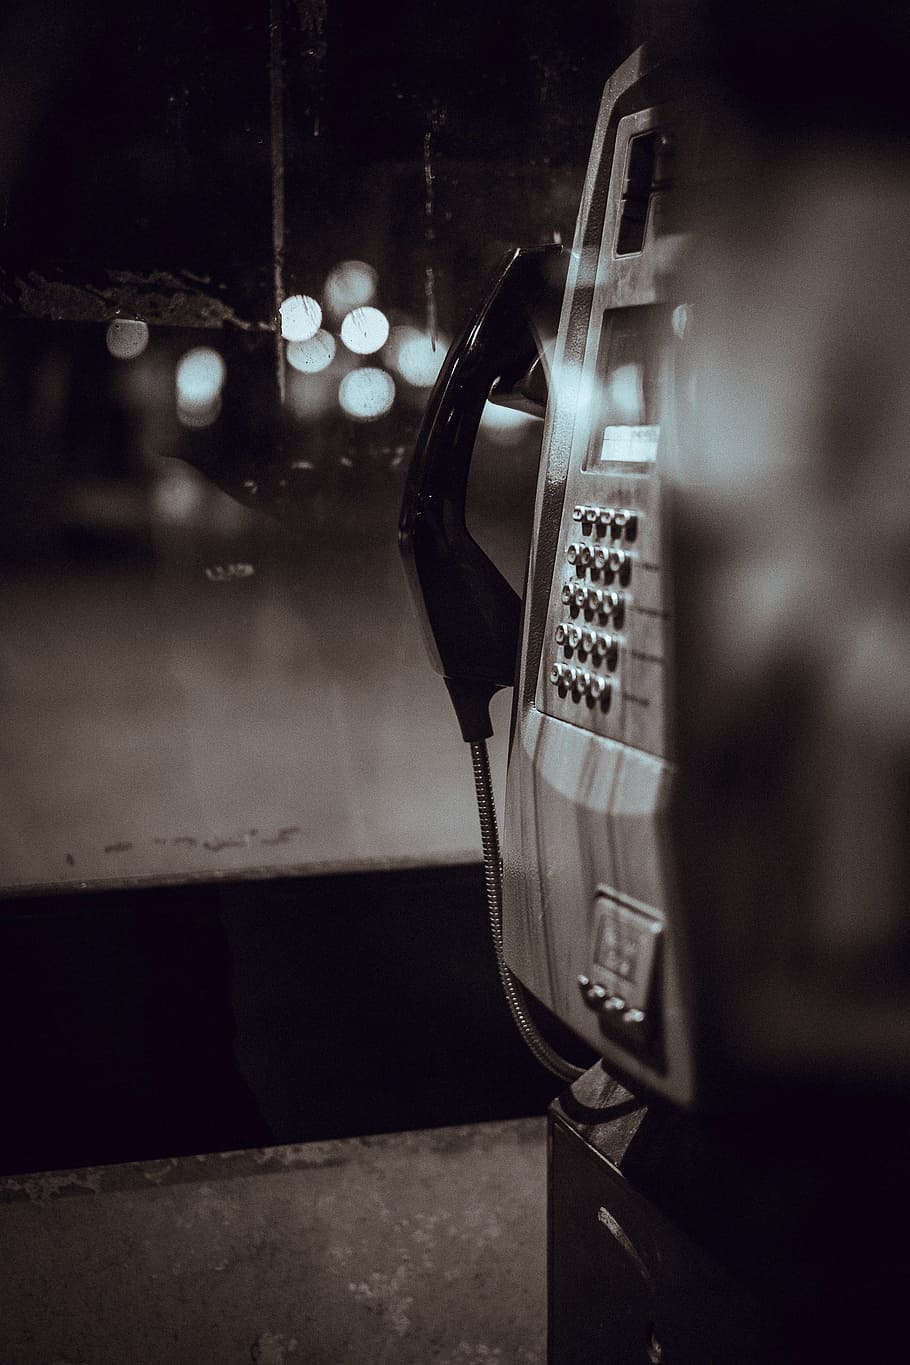 teléfono público, comunicación, llamada, teléfono, blanco y negro, primer plano, tecnología, no gente, noche, estilo retro